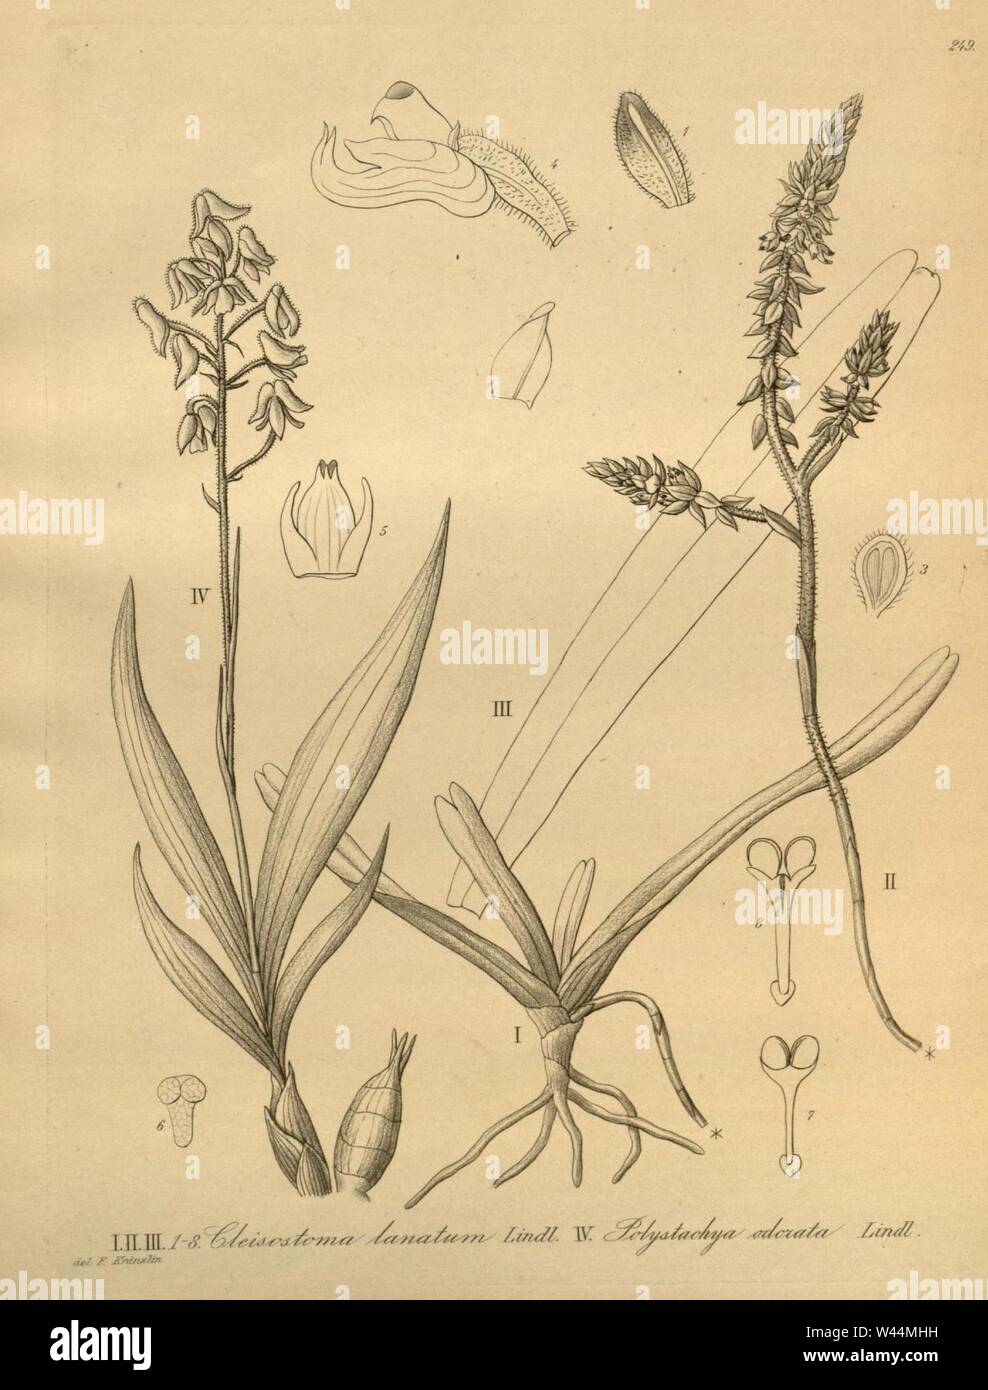 Cleisomeria lanatum (as Cleisostoma lanatum) - Polystachya odorata - Xenia 3 pl 249. Stock Photo